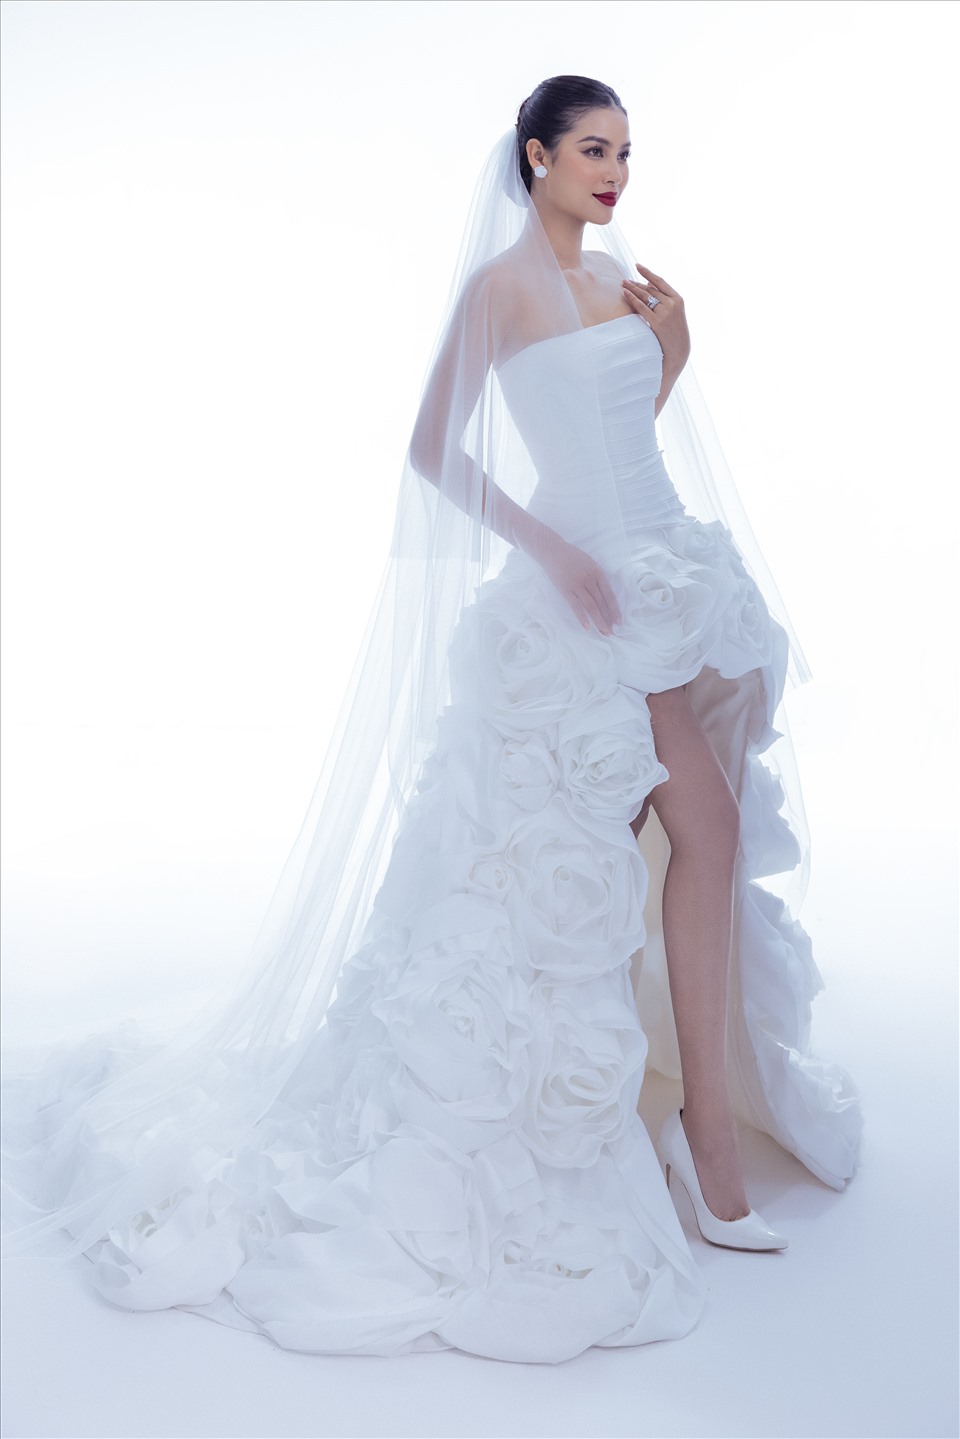 NTK Lê Thanh Hòa chuẩn bị ra mắt bộ sưu tập váy cưới dành cho mùa cưới 2022. Anh vừa “nhá hàng” vài thiết kế do Phạm Hương làm người mẫu.